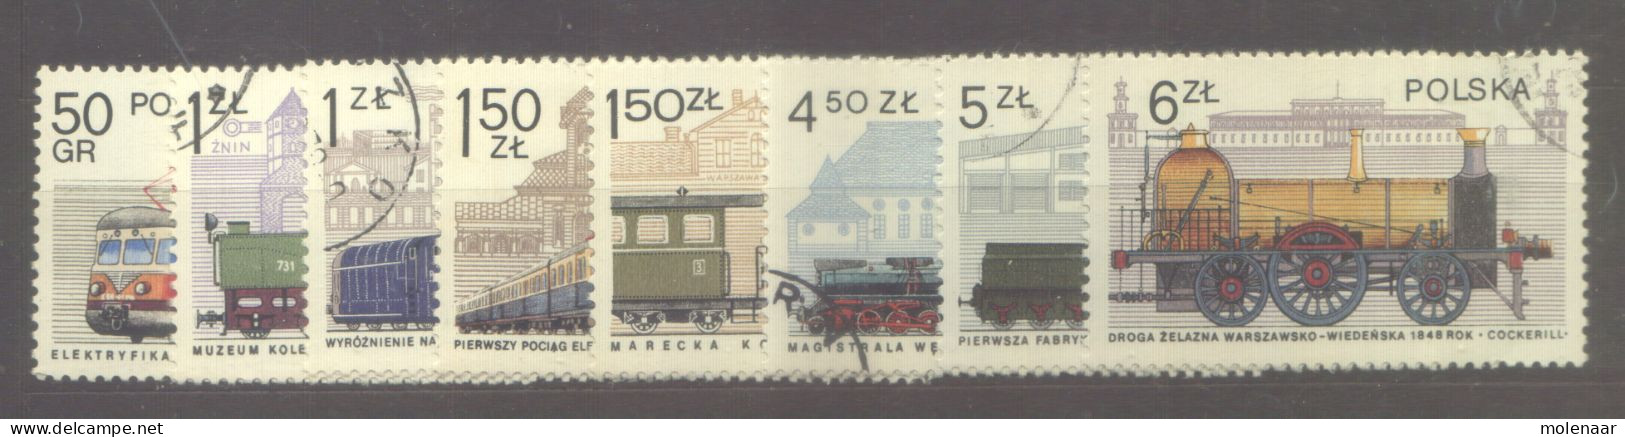 Postzegels > Europa > Polen > 1944-.... Republiek > 1971-80 > Gebruikt No. 2540-2547  (24152) - Oblitérés